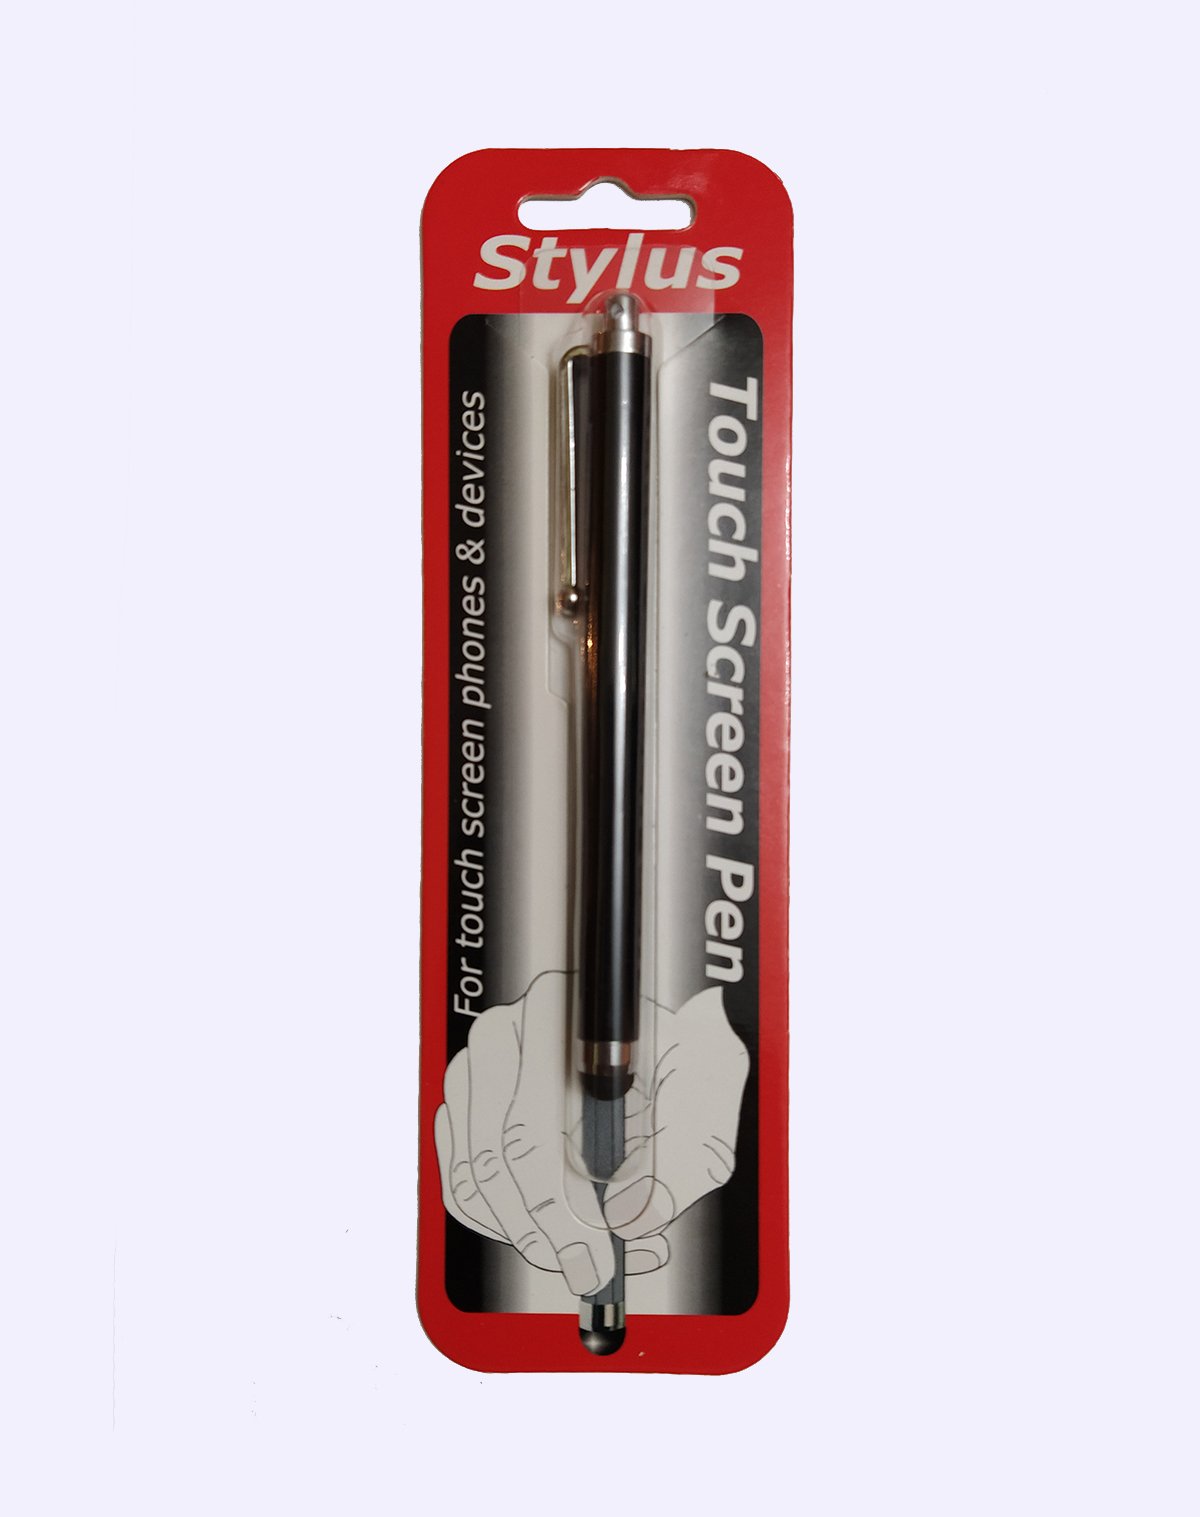 Lapiz capacitivo stylus pen para celulares, tabletas y pantallas táctiles